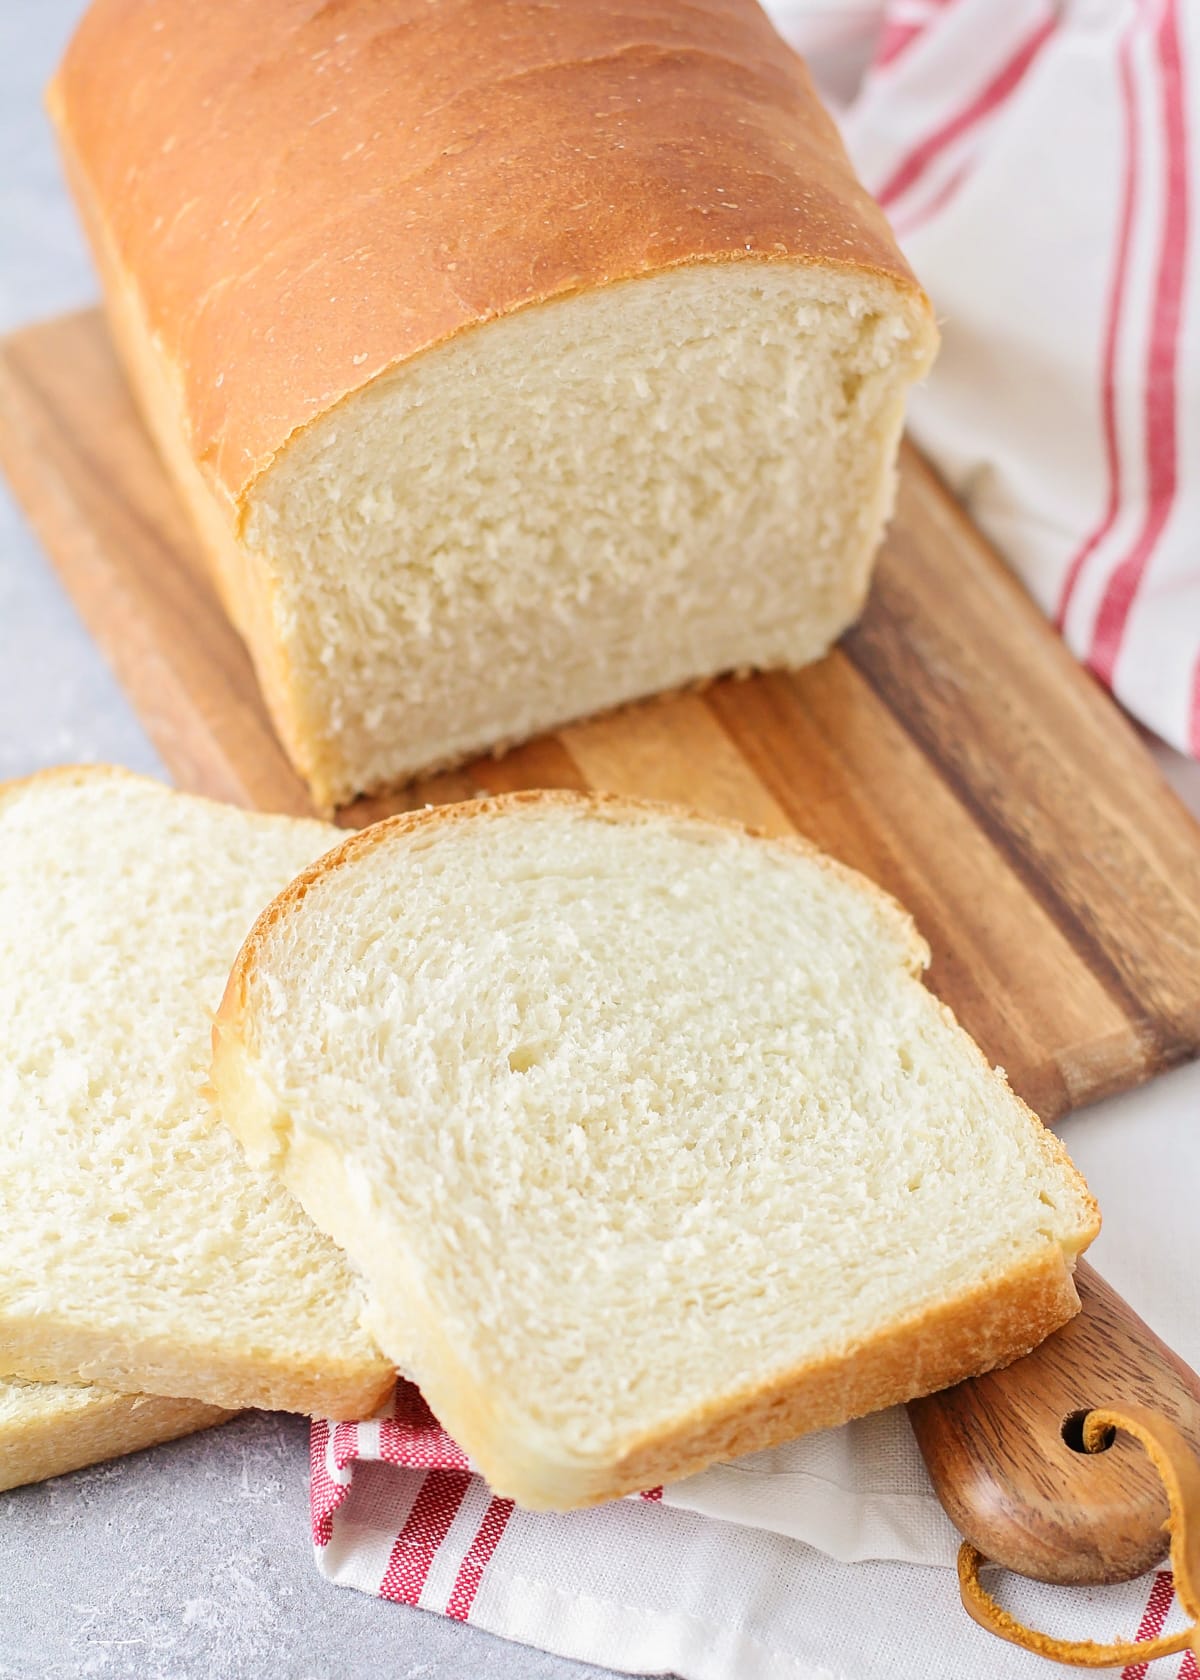 自制的面包片和面包放在砧板上。